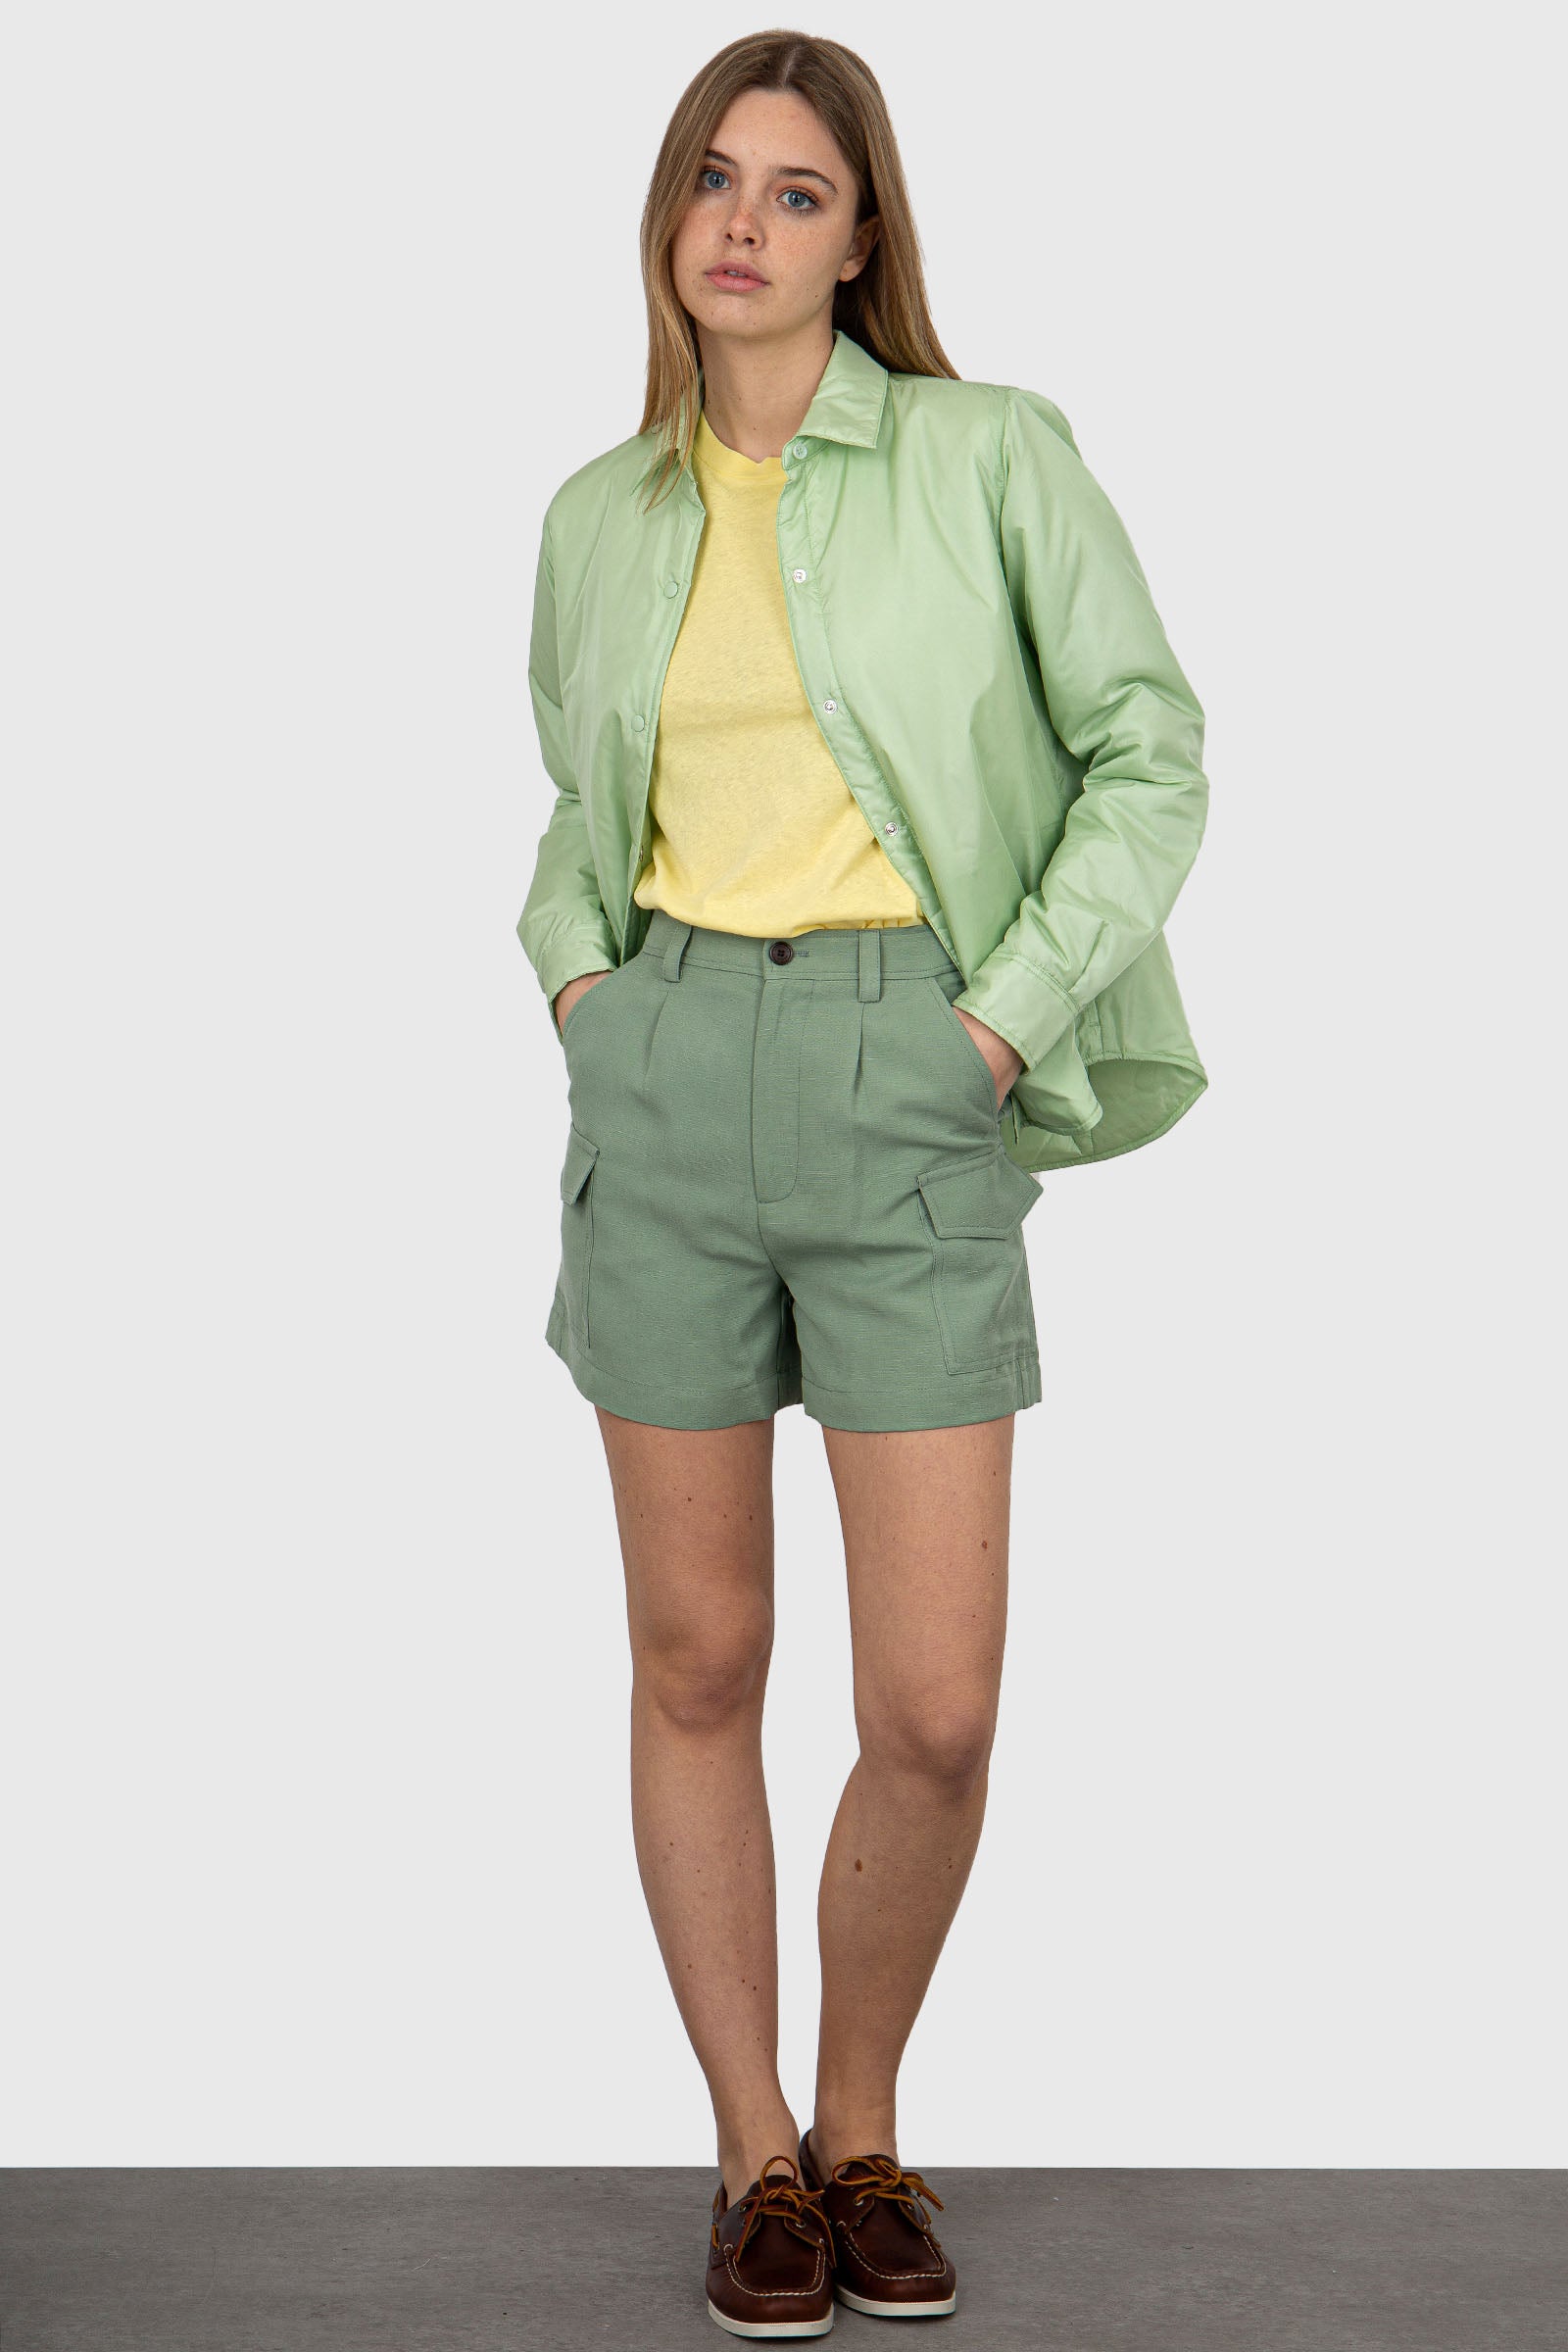 Woolrich Mint Green Linen/Viscose Shorts - 2